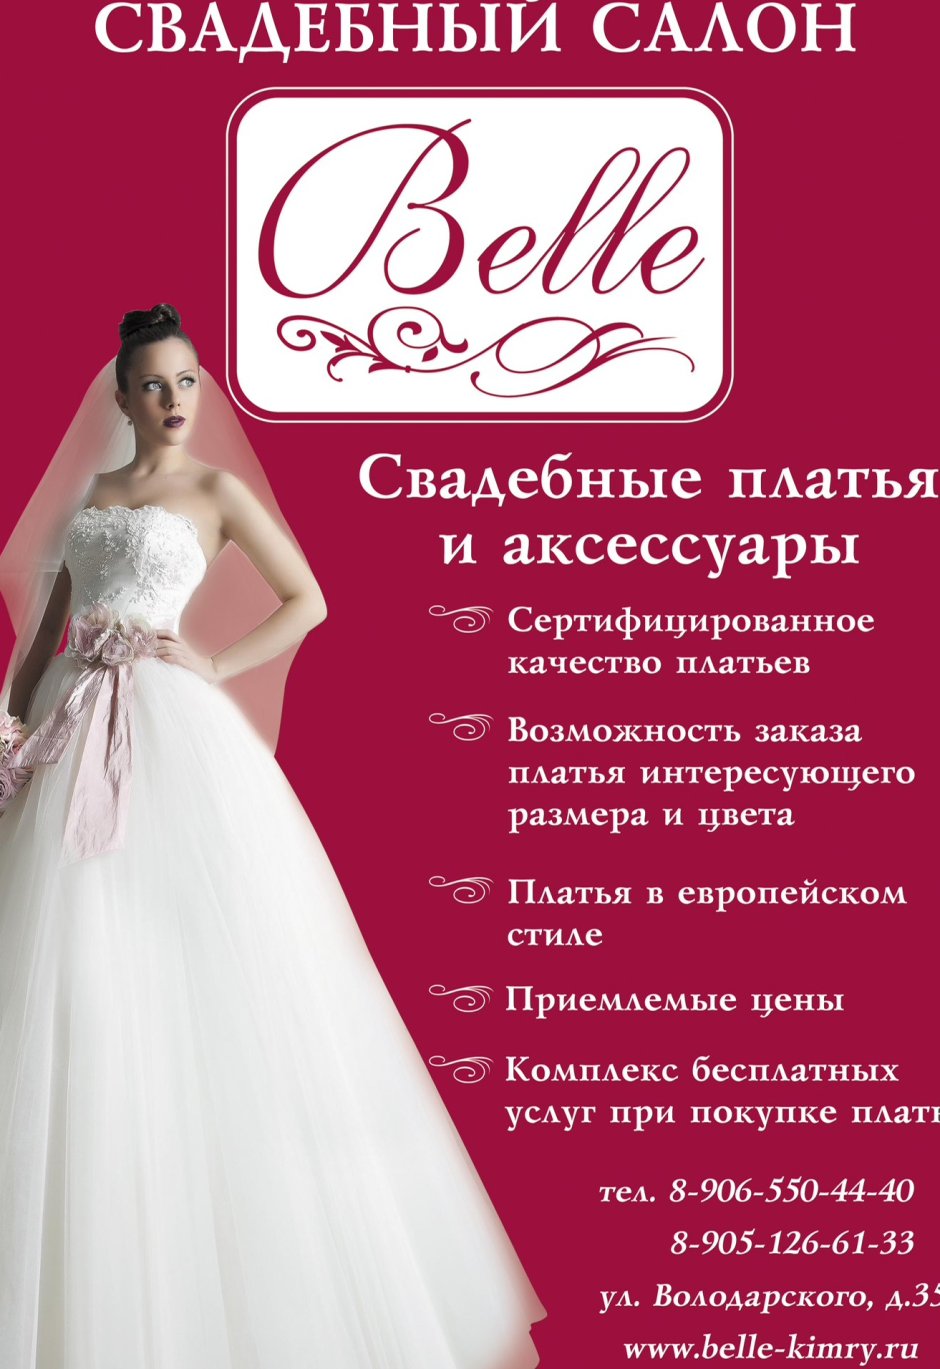 Описание свадебного платья для книги